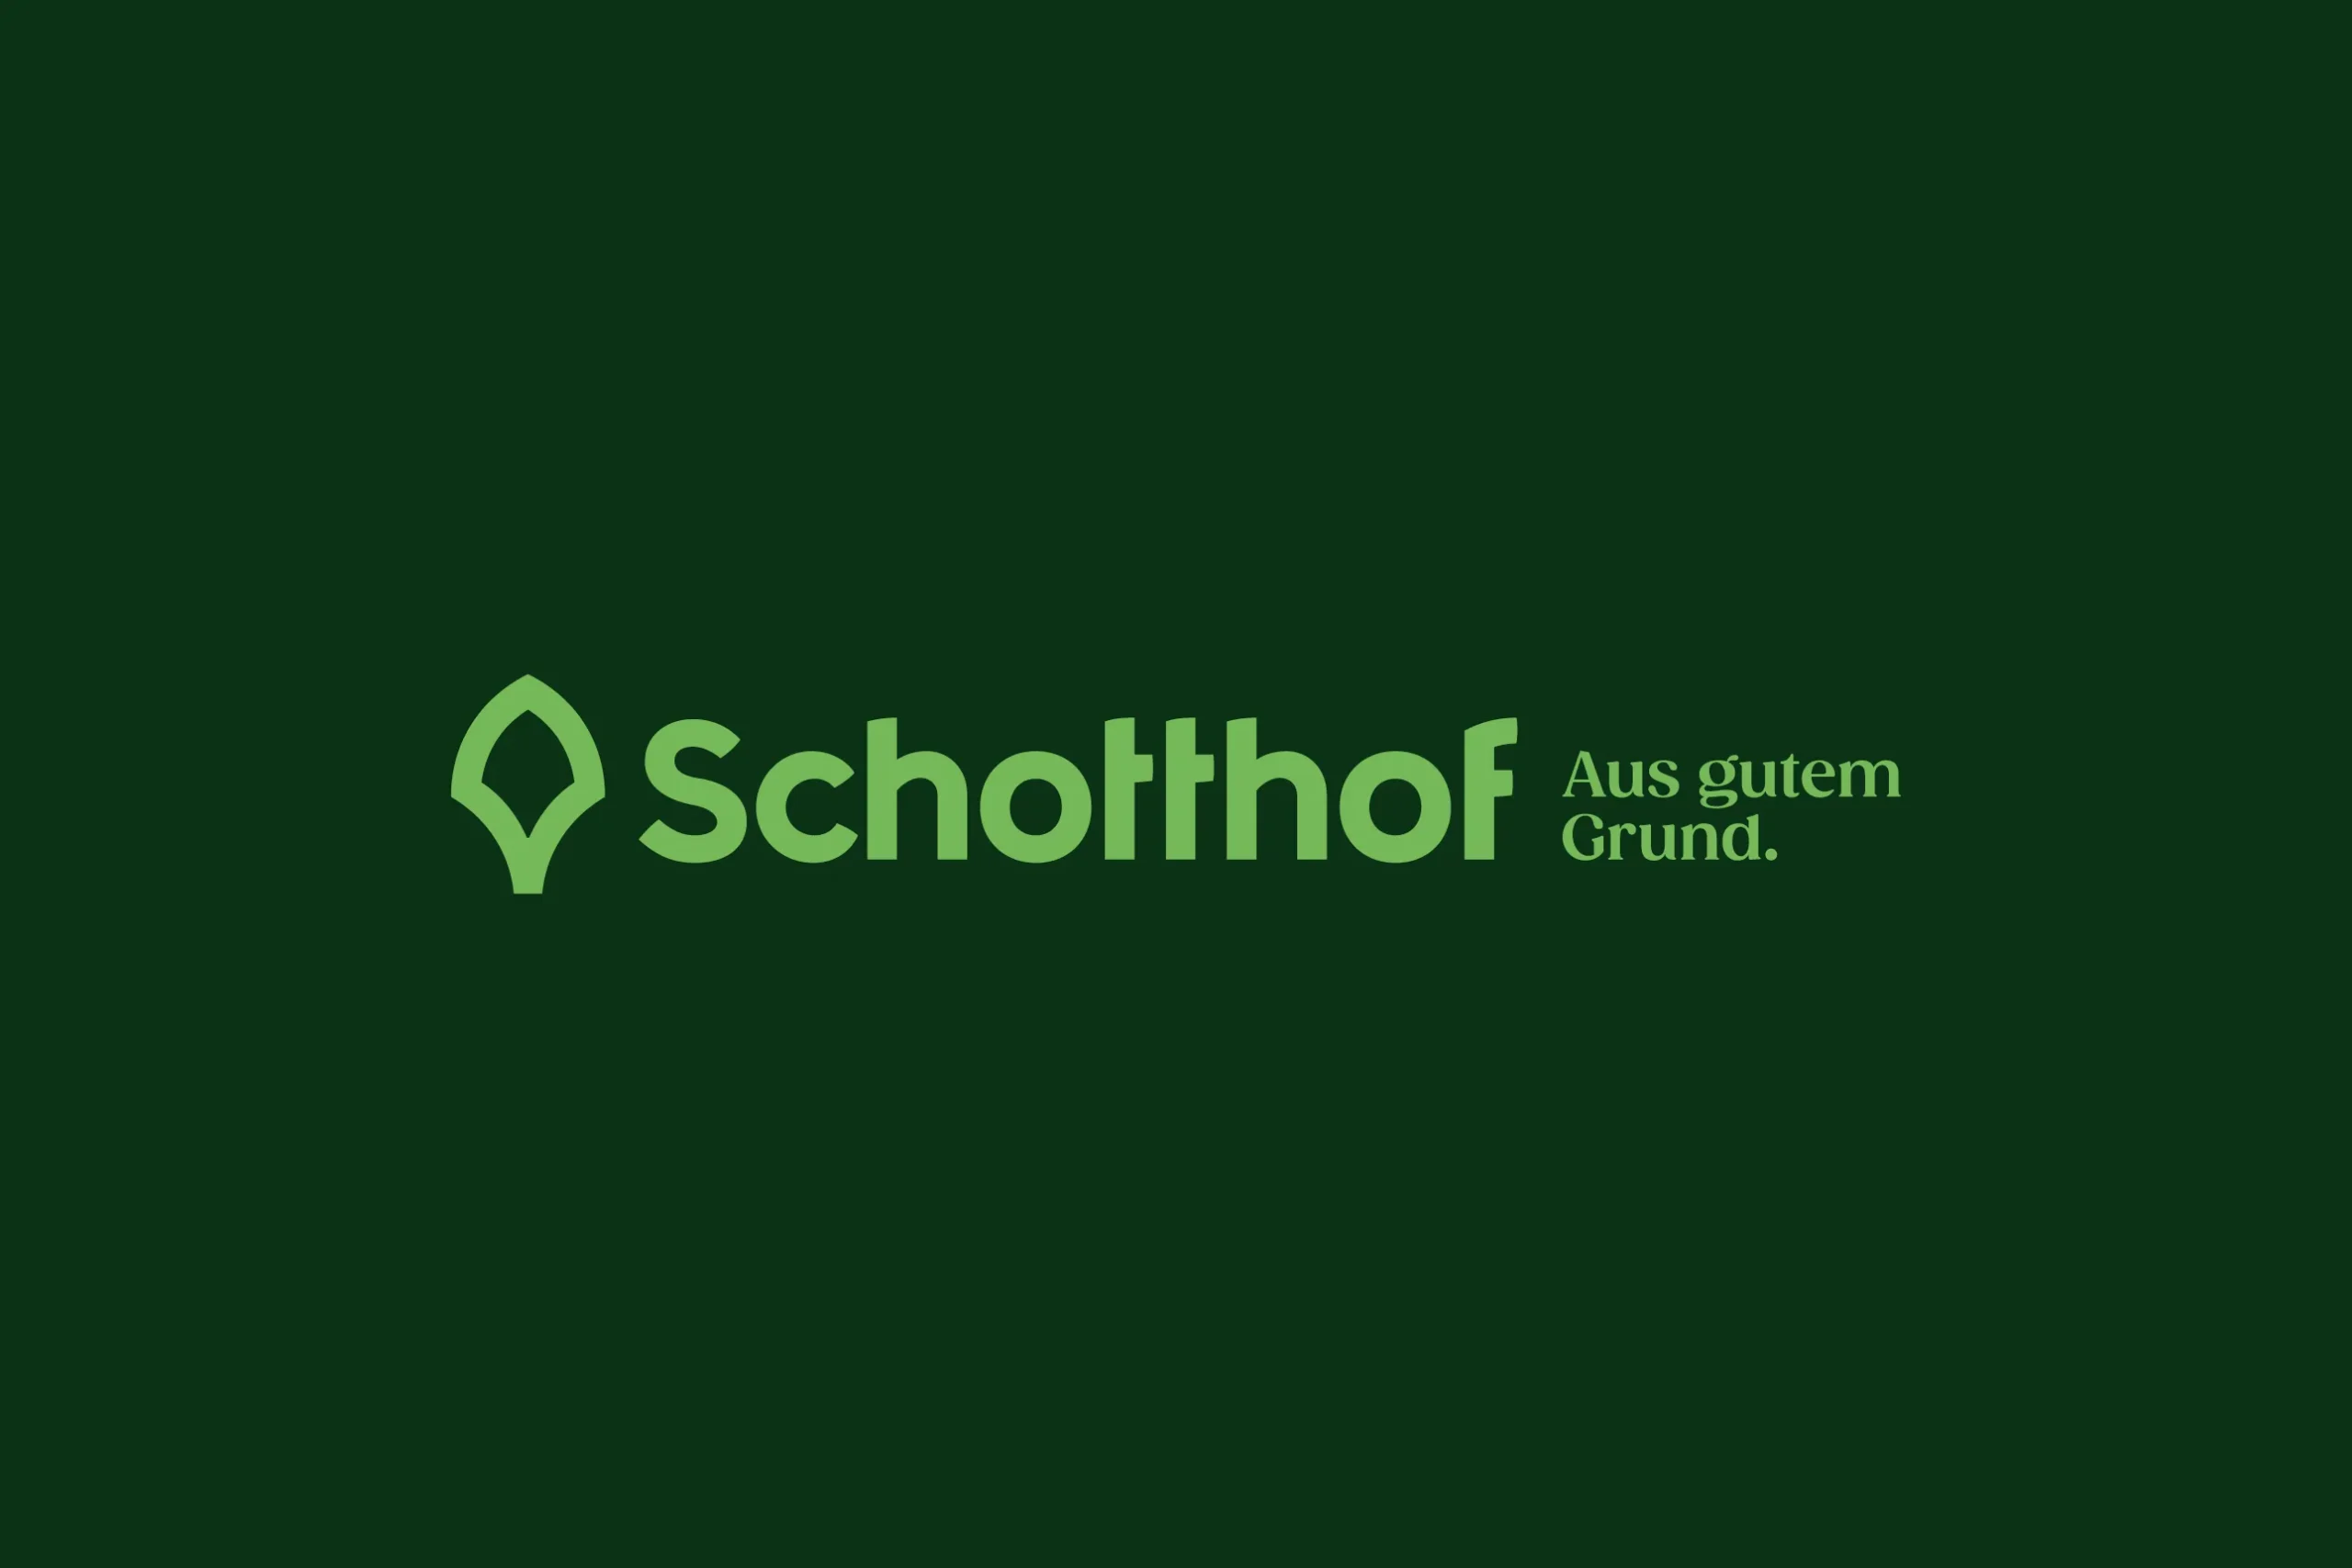 Schotthof